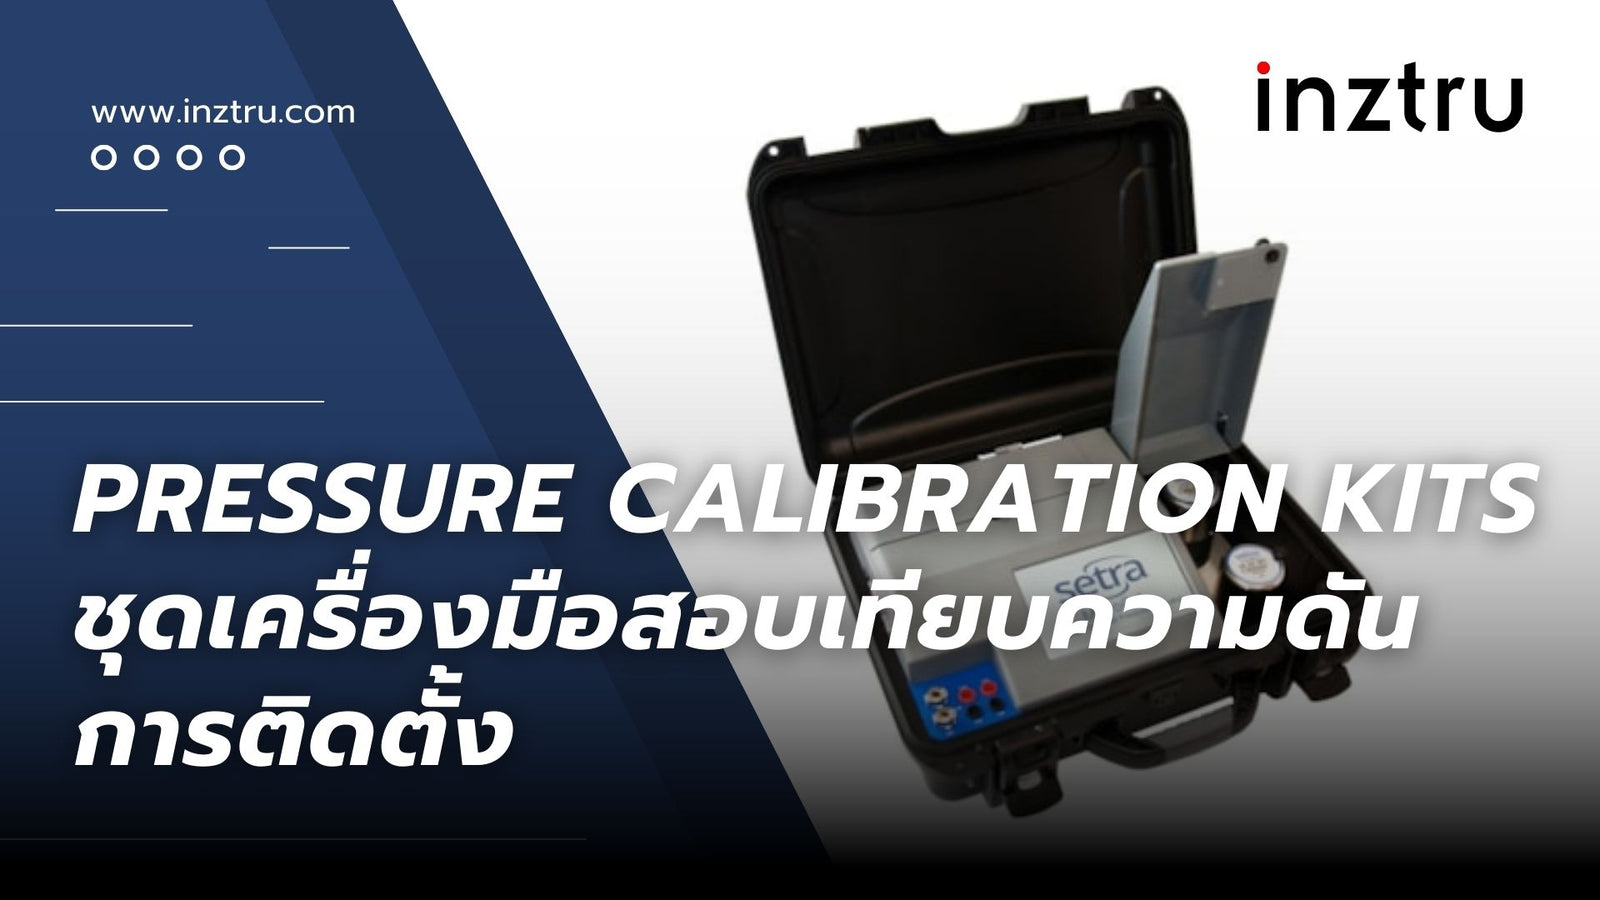 Pressure Calibration Kits ชุดเครื่องมือสอบเทียบความดัน : การติดตั้ง